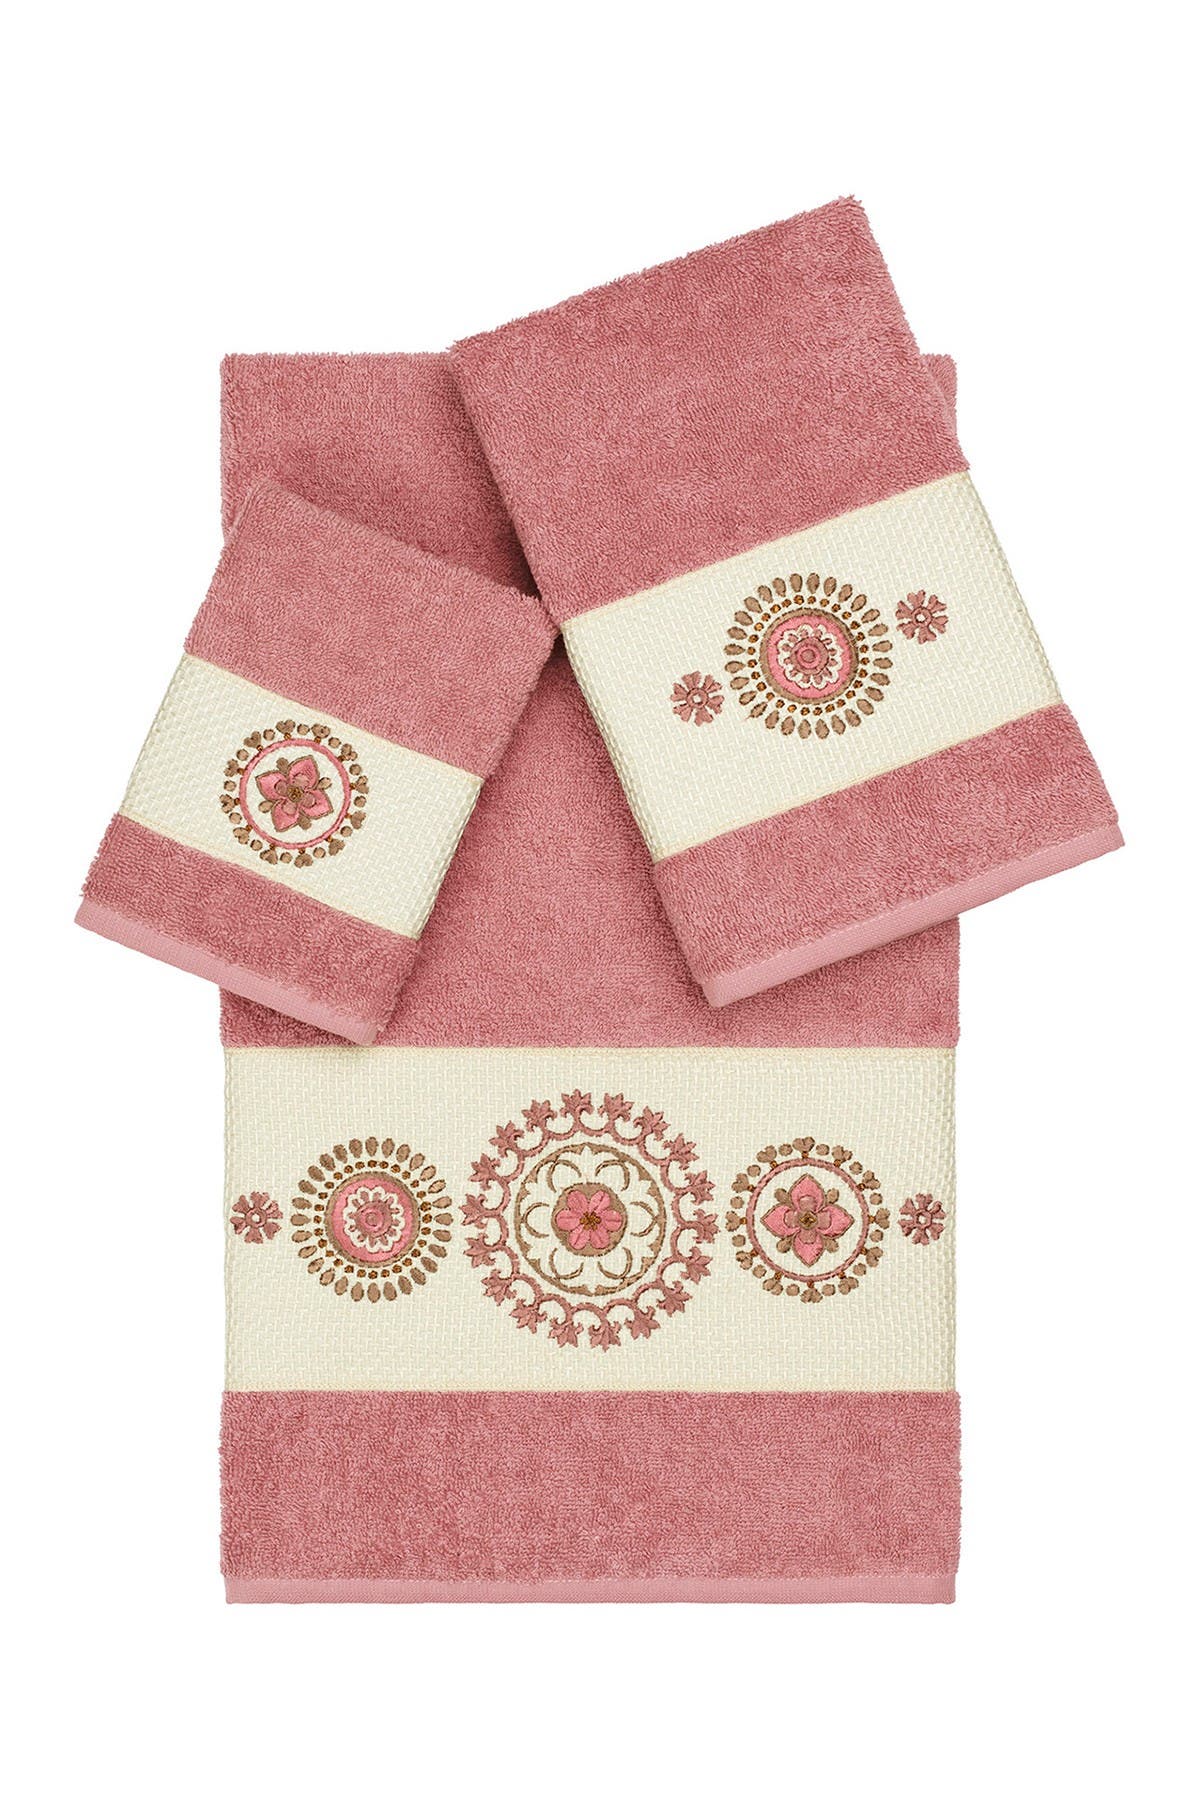 Linum Home Isabelle 3-piece Embellished Towel Set